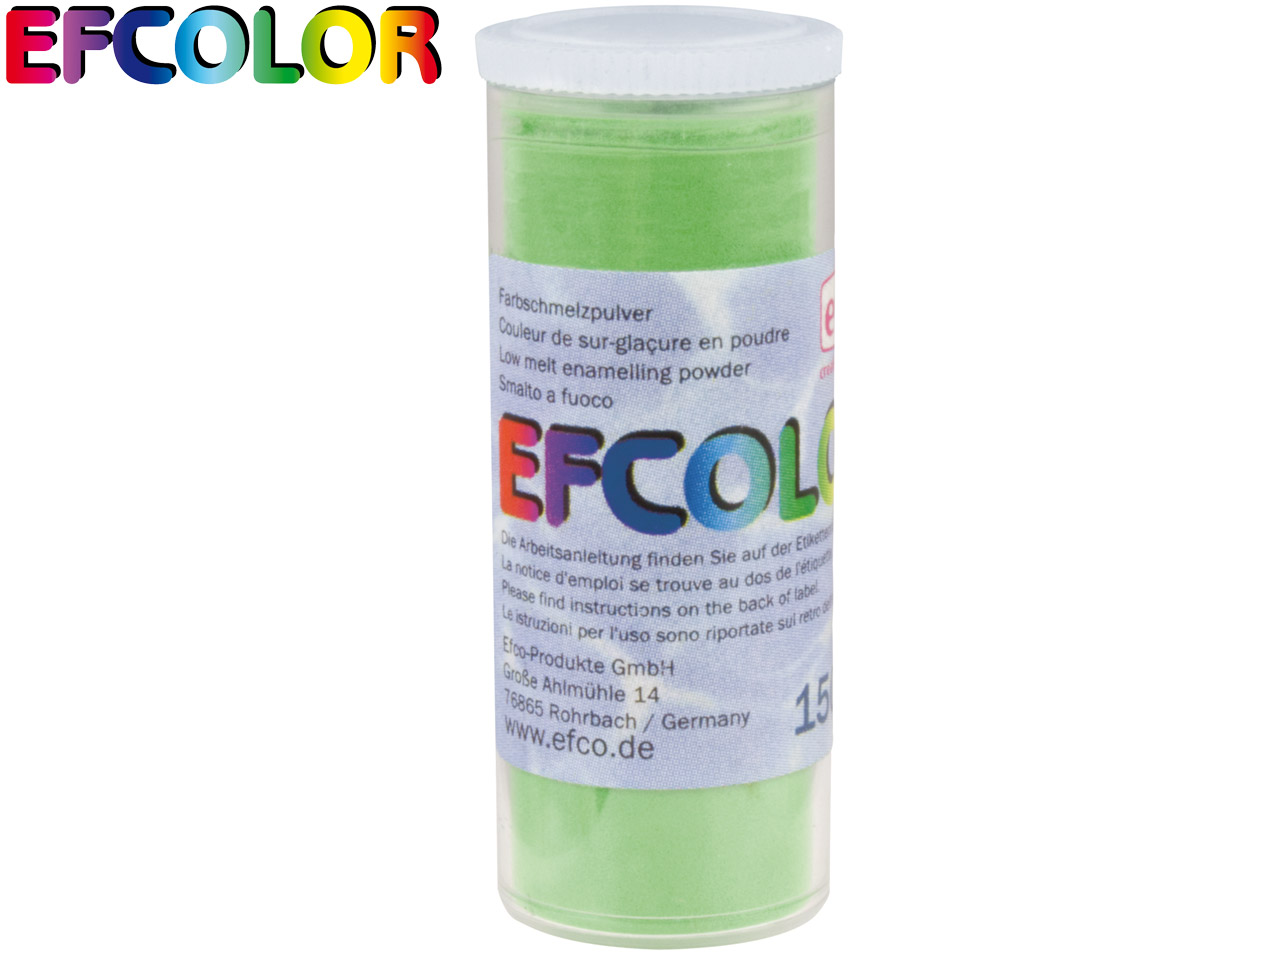 Efcolor Enamel Light Green 10ml - Standard Image - 2